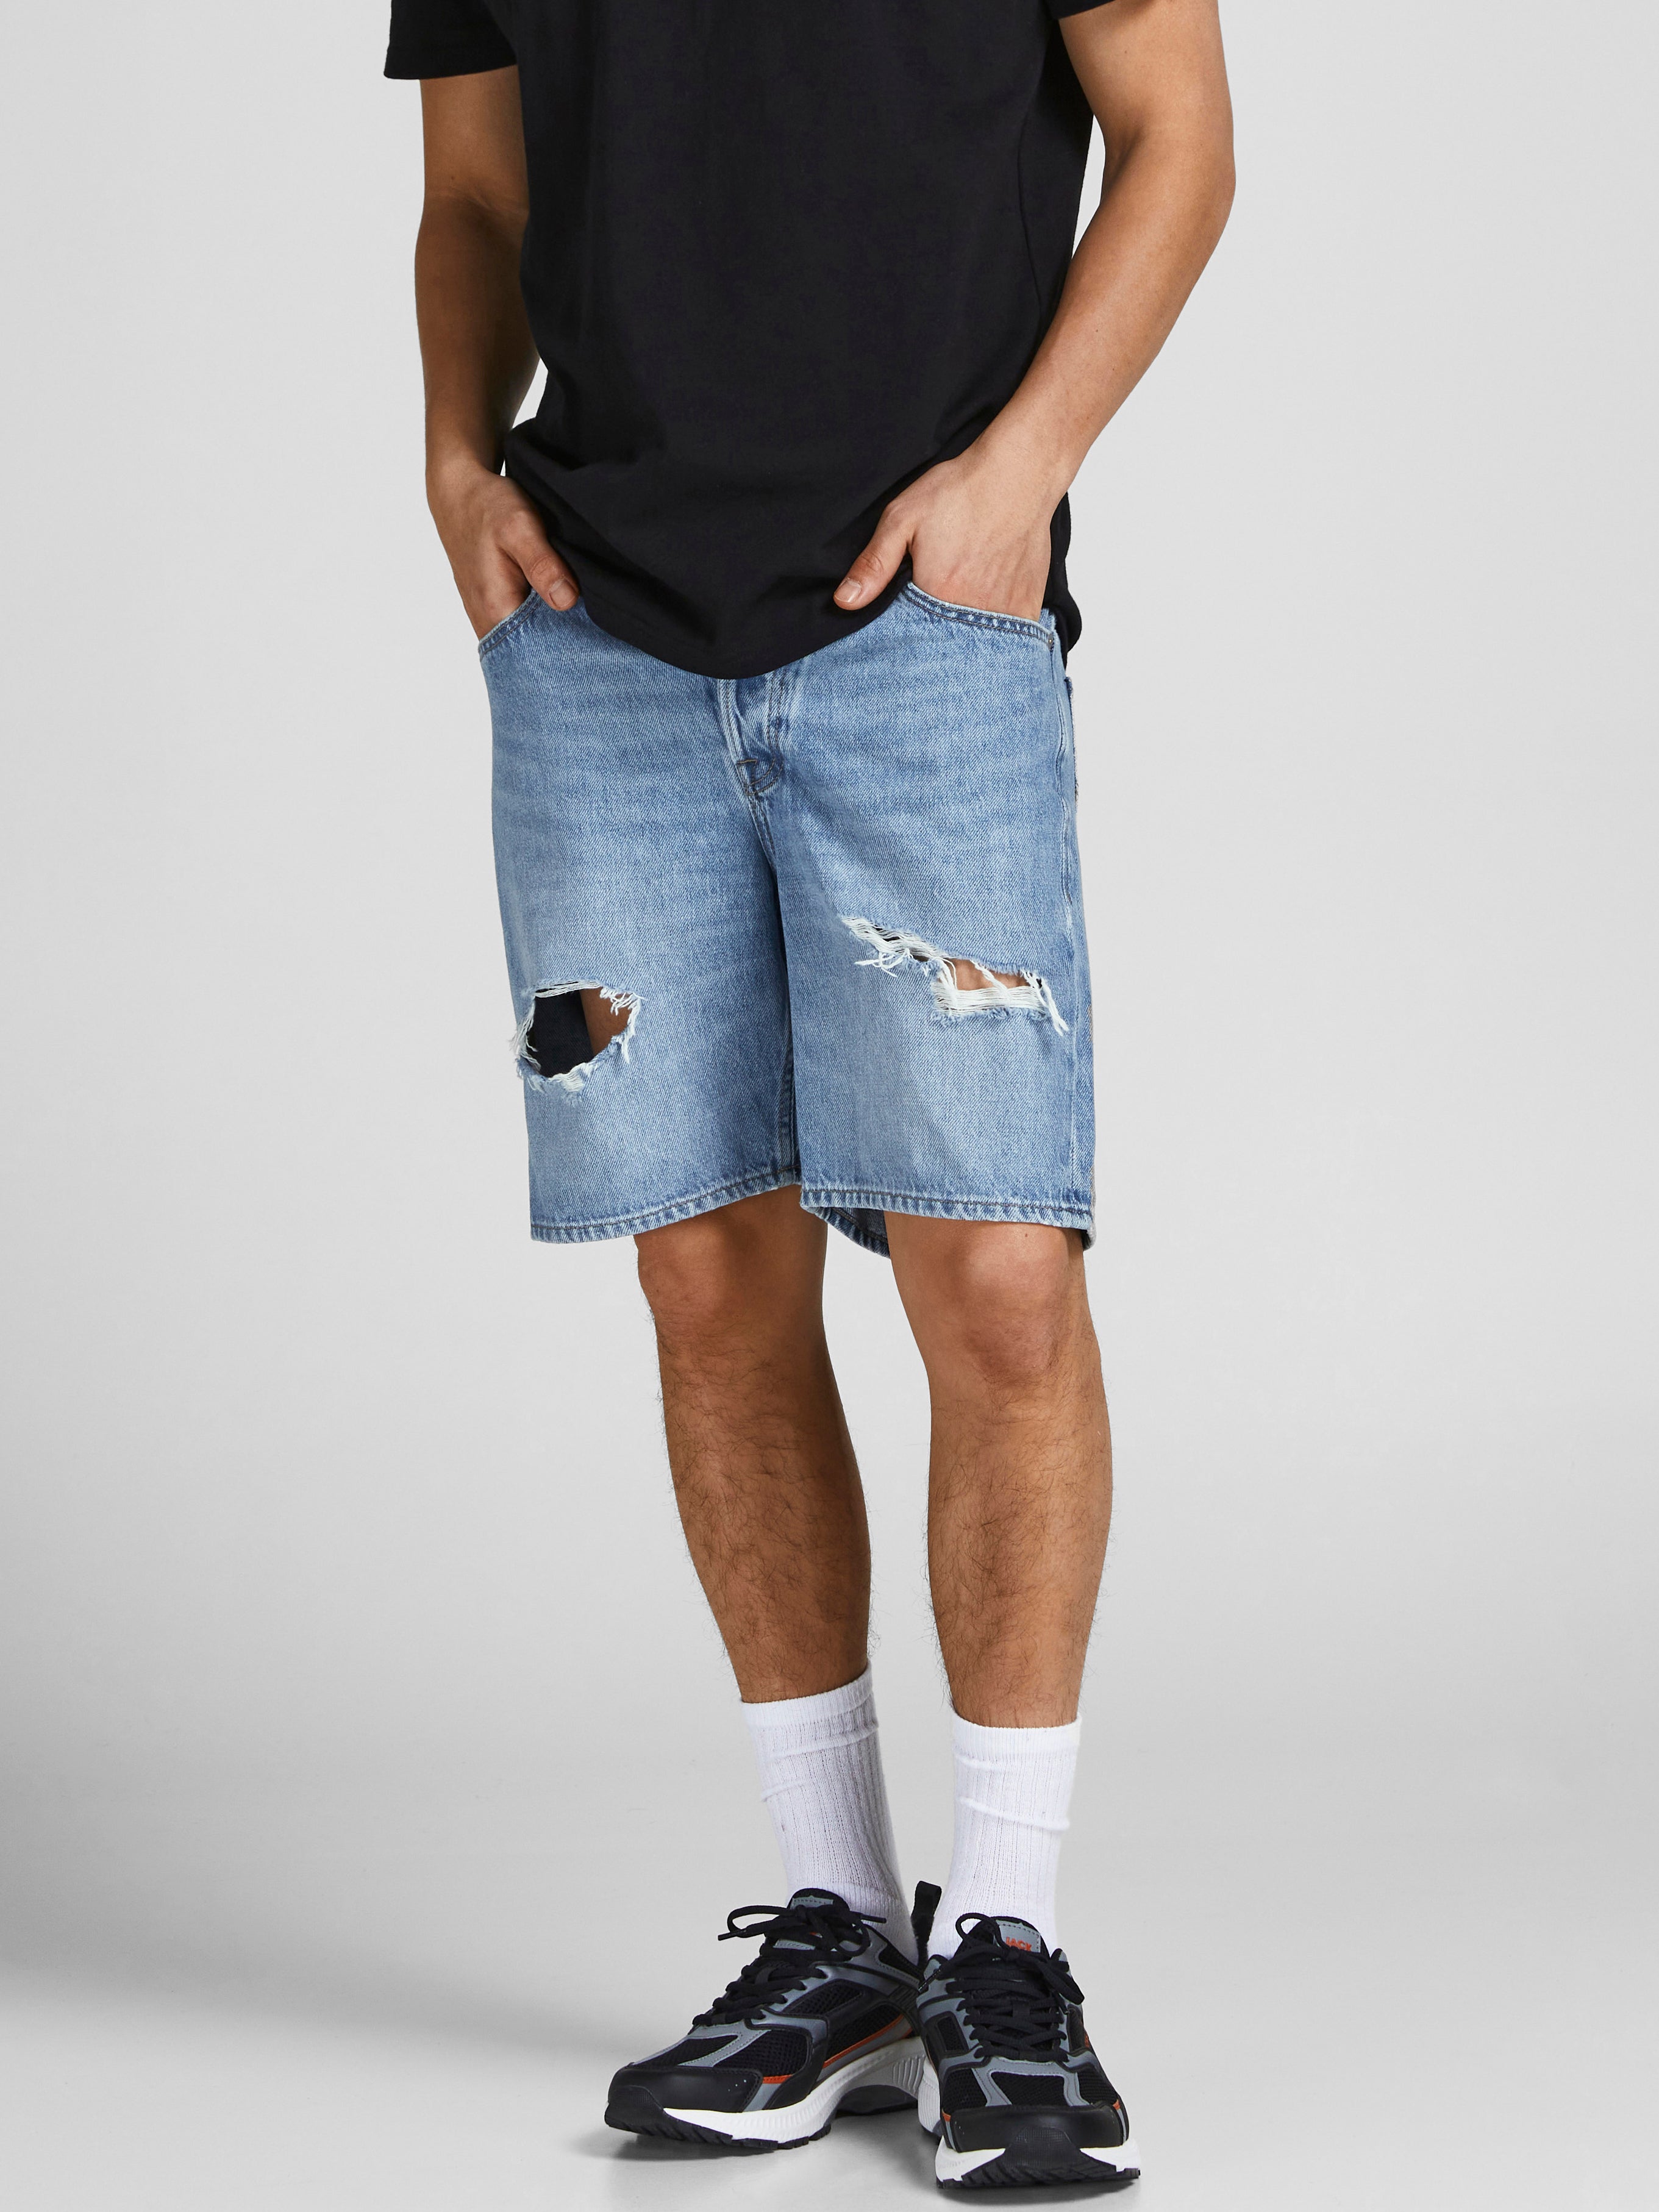 Blue M Jack & Jones shorts jeans discount 56% MEN FASHION Jeans Strech 